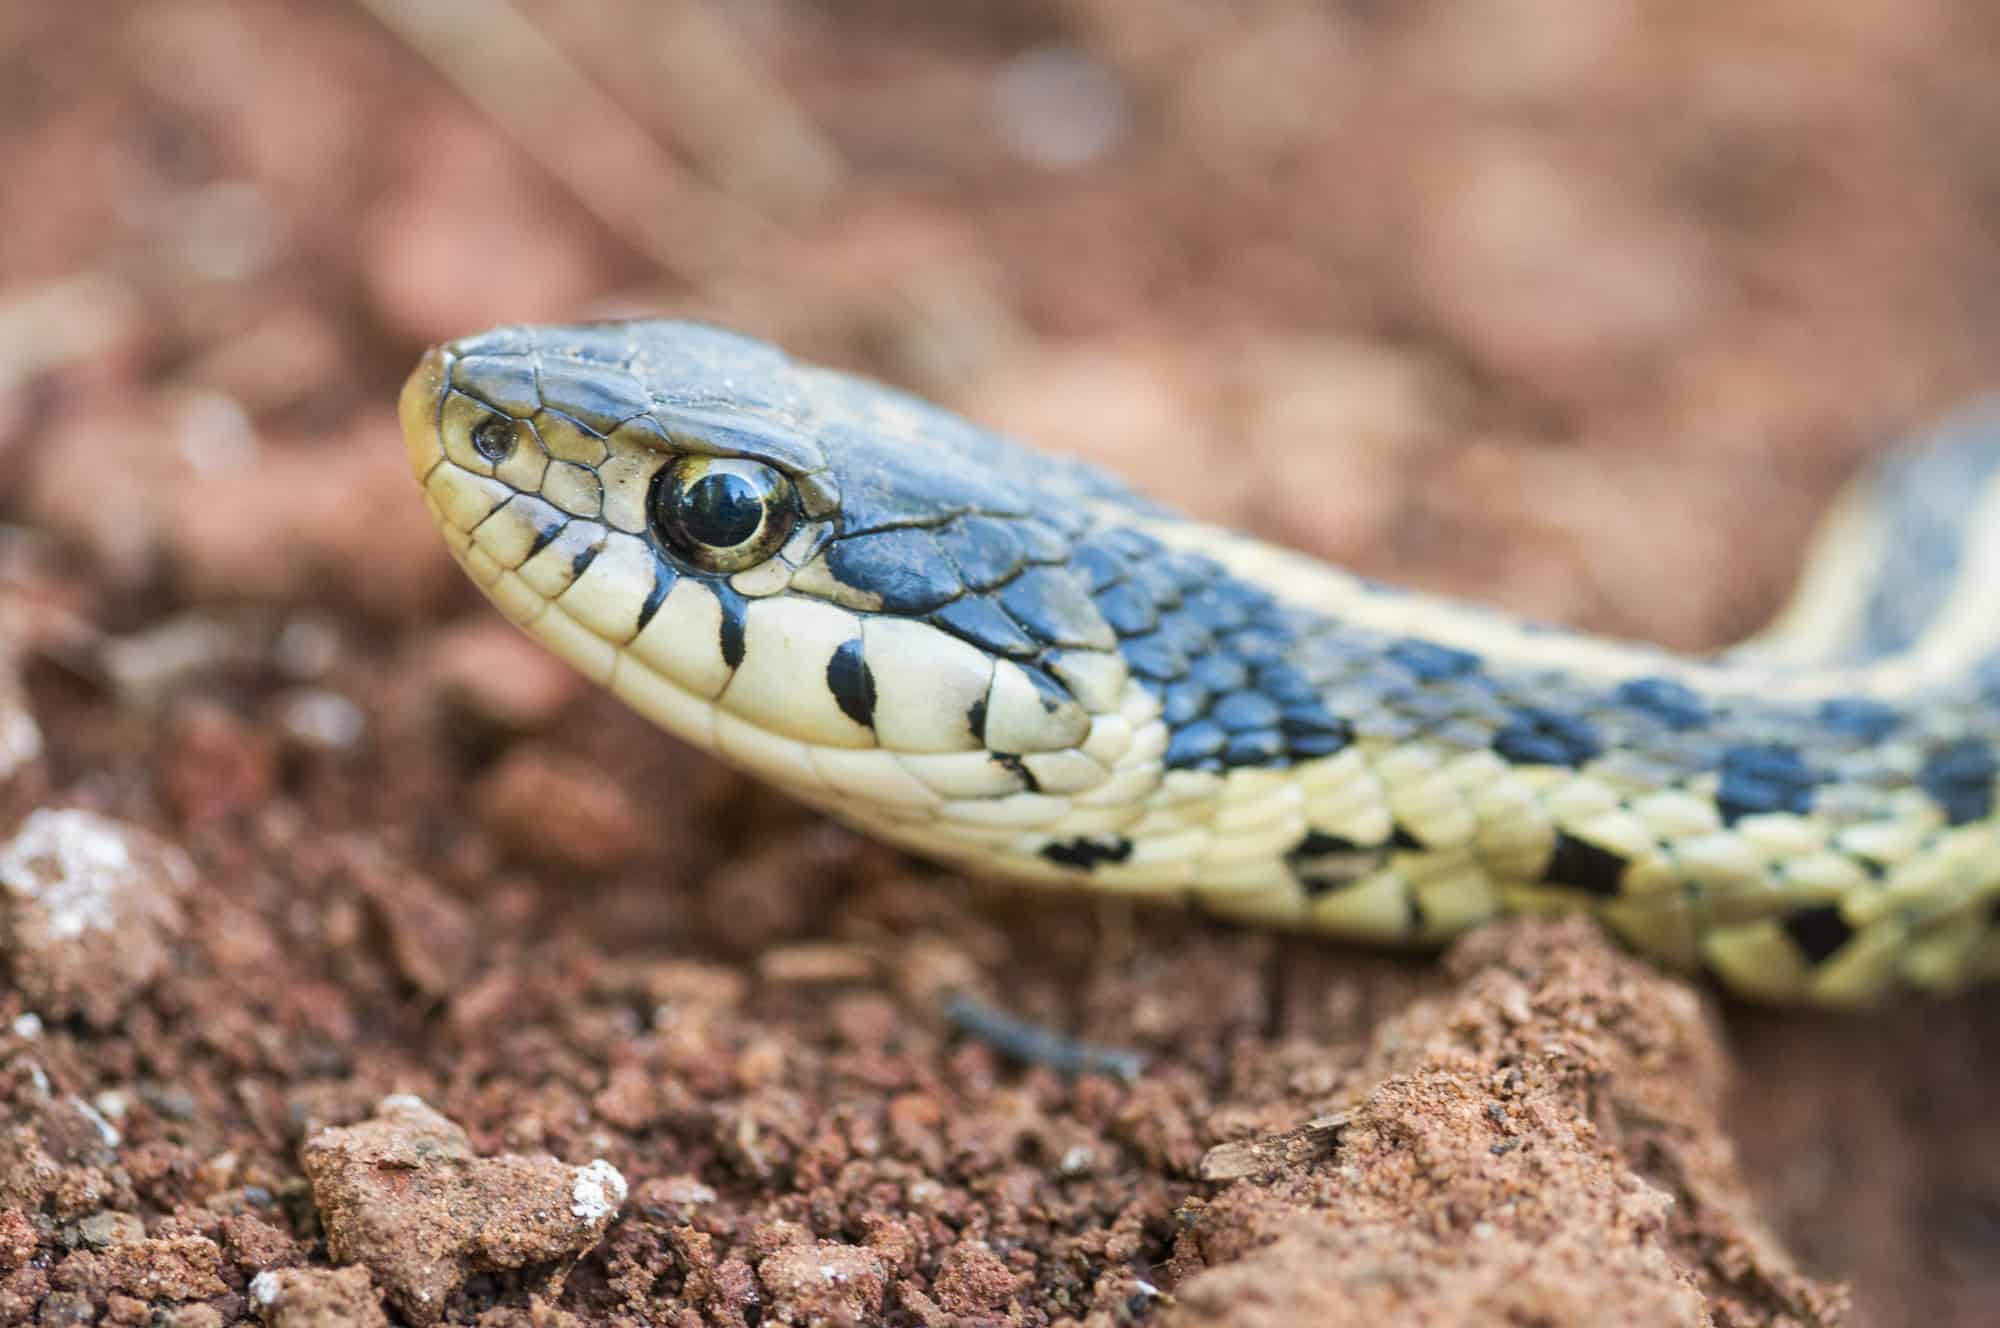 A checkered garter snake raising its head